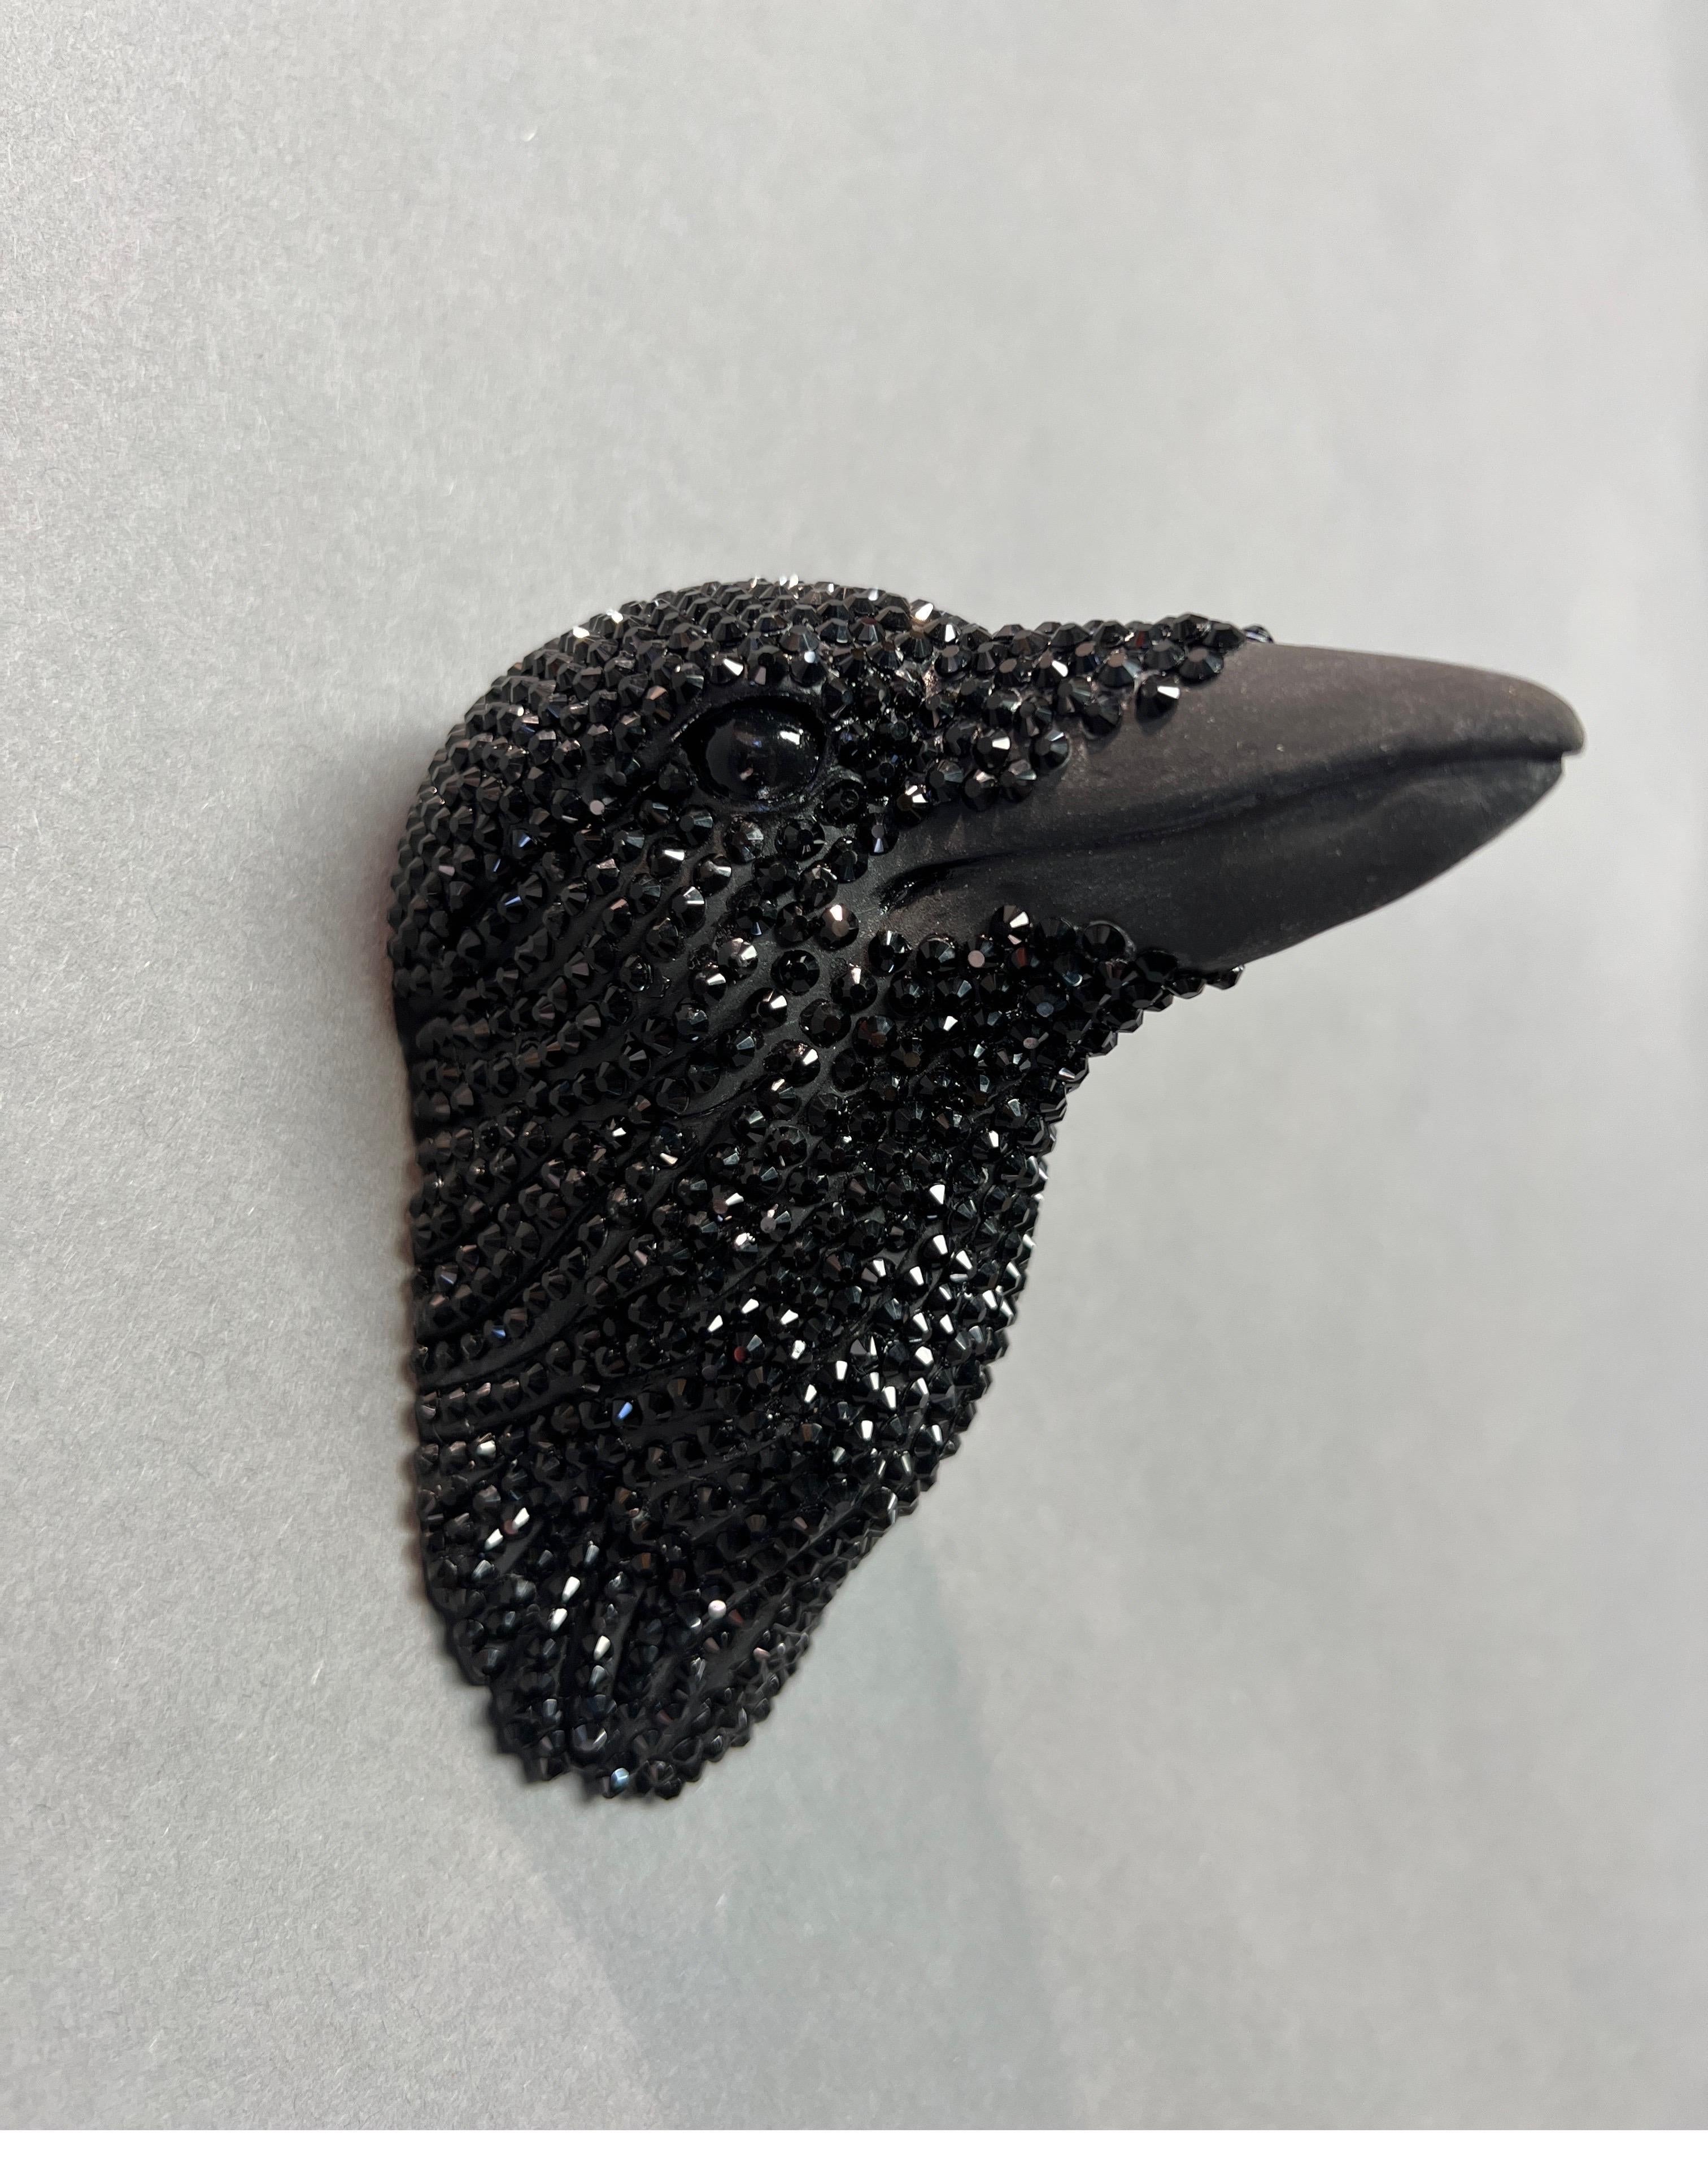 Karla Walter Still-Life Sculpture - Ceramic, Swarovski Crystals, Wall Sculpture of Crow Head